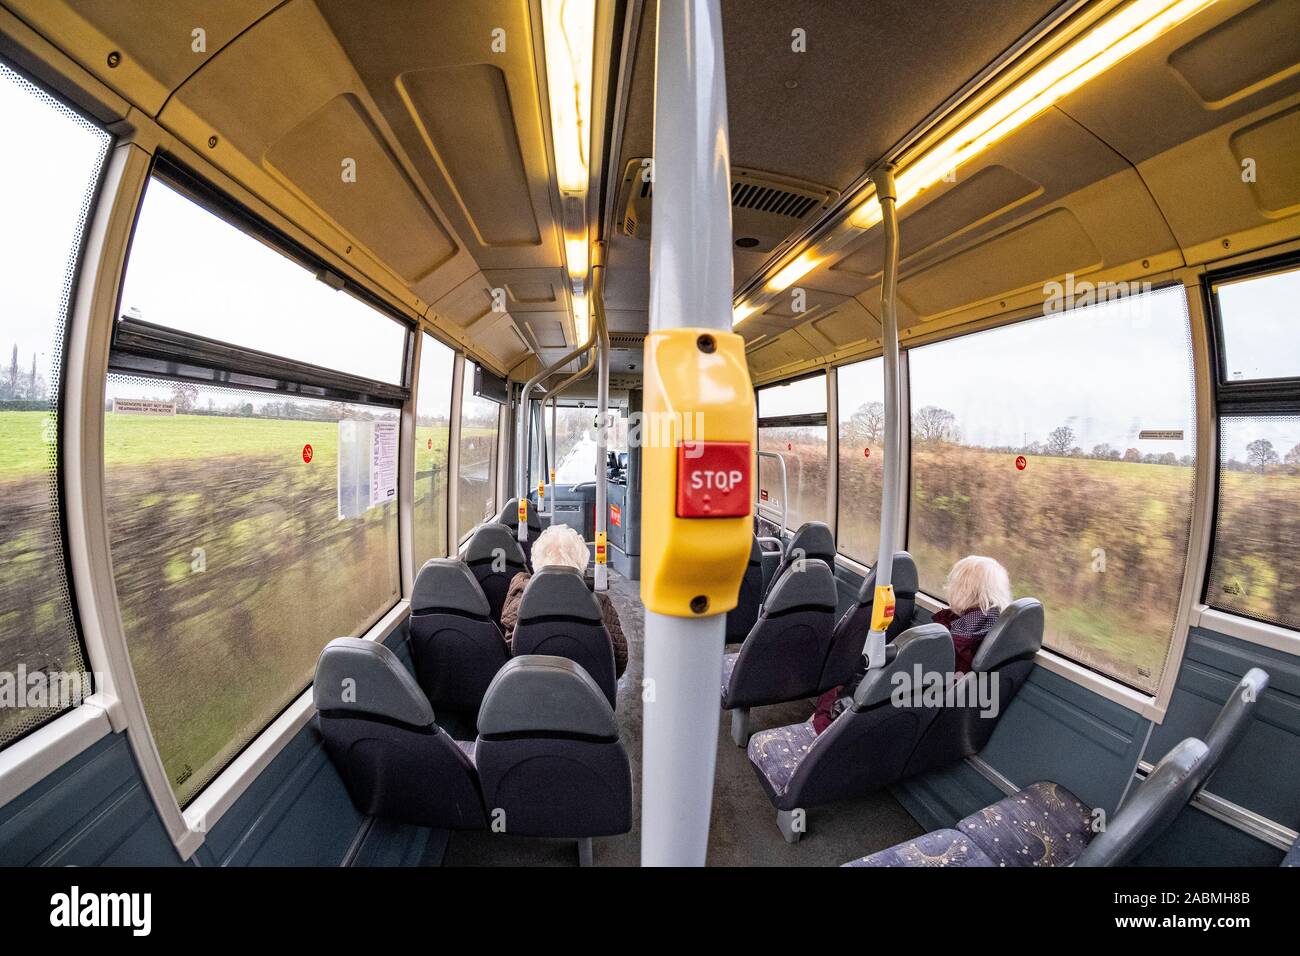 Fisheye view of a bus interior UK Stock Photo